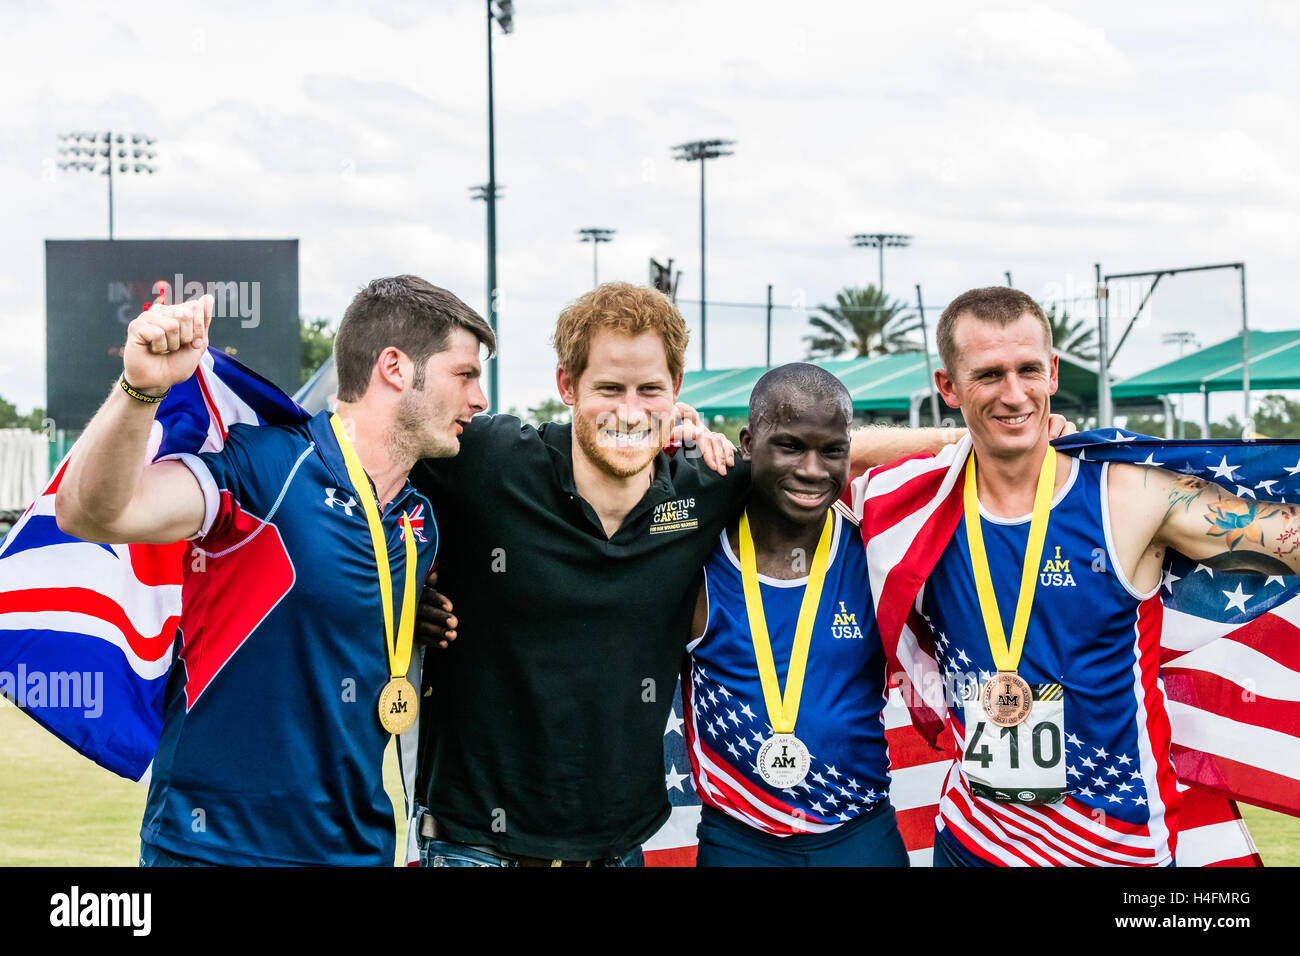 David Henson, der das Vereinigte Königreich, zusammen mit Allan Armstrong und William Reynolds der USA, posieren mit Prinz Harry, nachdem er sie mit ihren Medaillen für die Männer 200 Meter Dash IT2 während die Invictus Games on 10. Mai 2016 auf ESPN breit vorgestellt Stockfoto